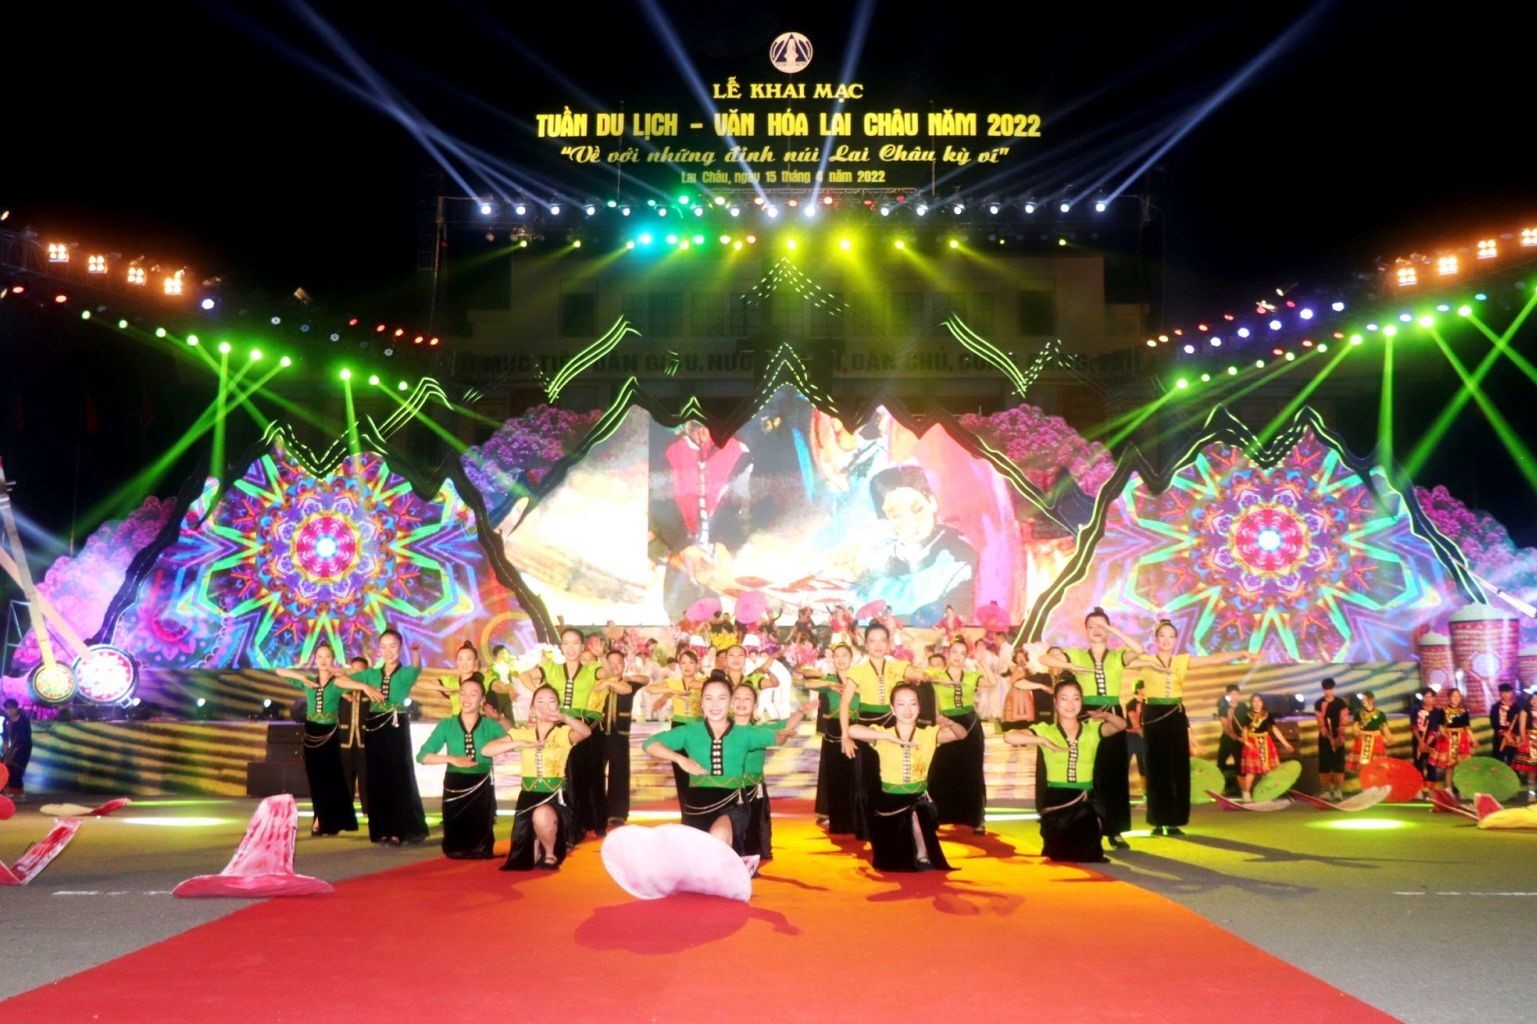 Màn khai từ mang tinh thần hân hoan chào đón Tuần Du lịch - Văn hóa Lai Châu năm 2022